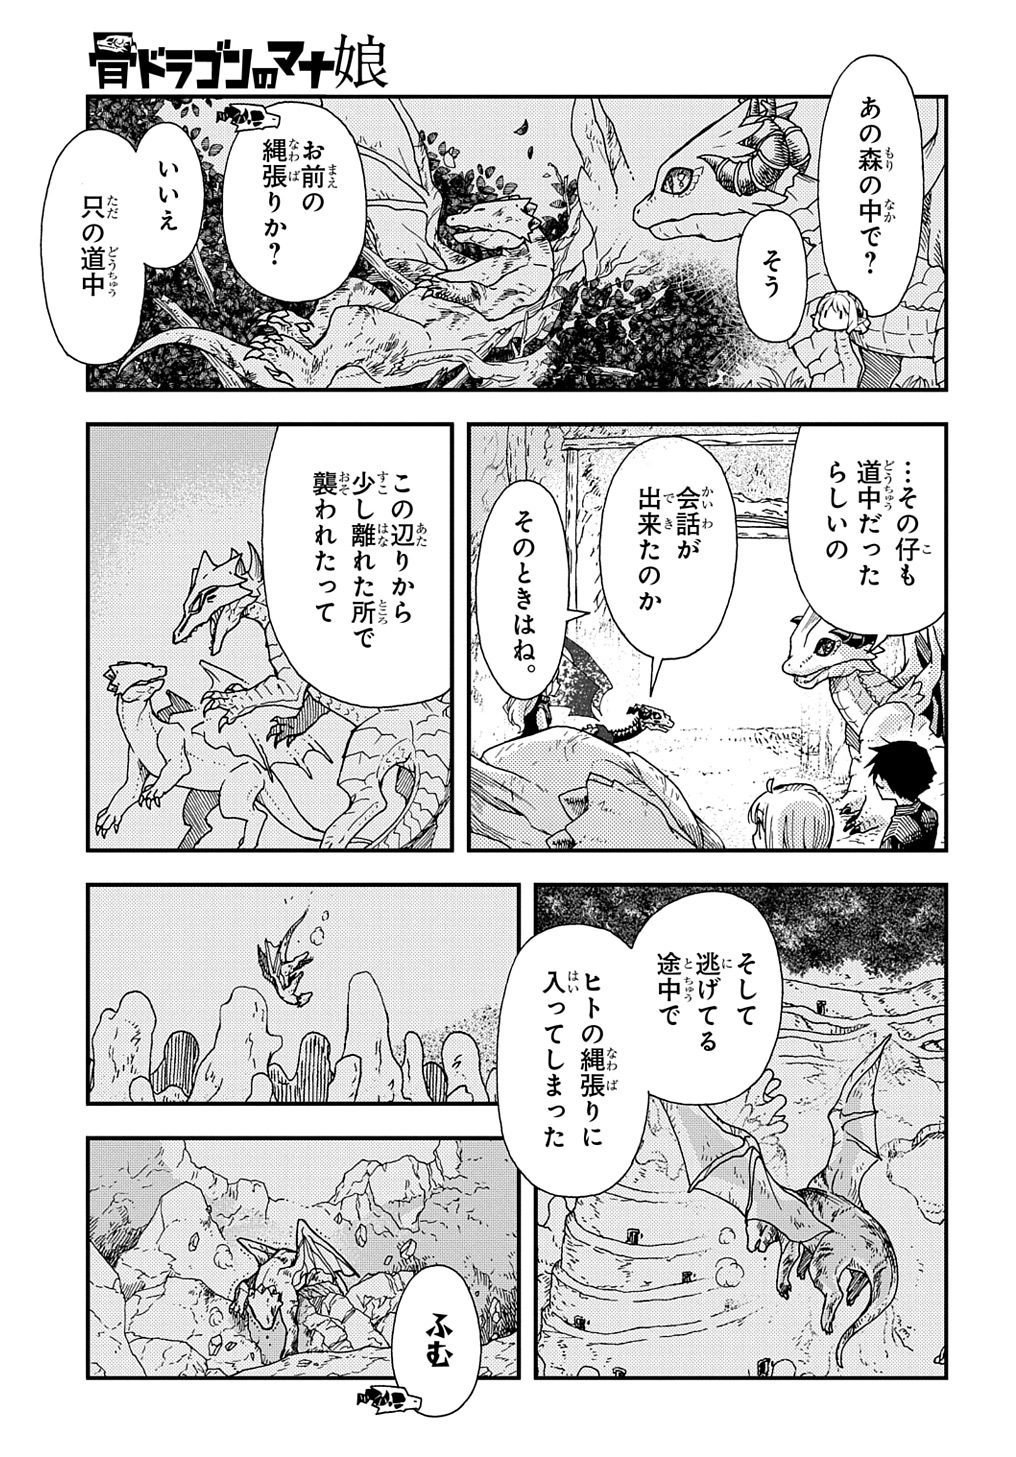 Hone Dragon no Mana Musume - Chapter 30.1 - Page 3